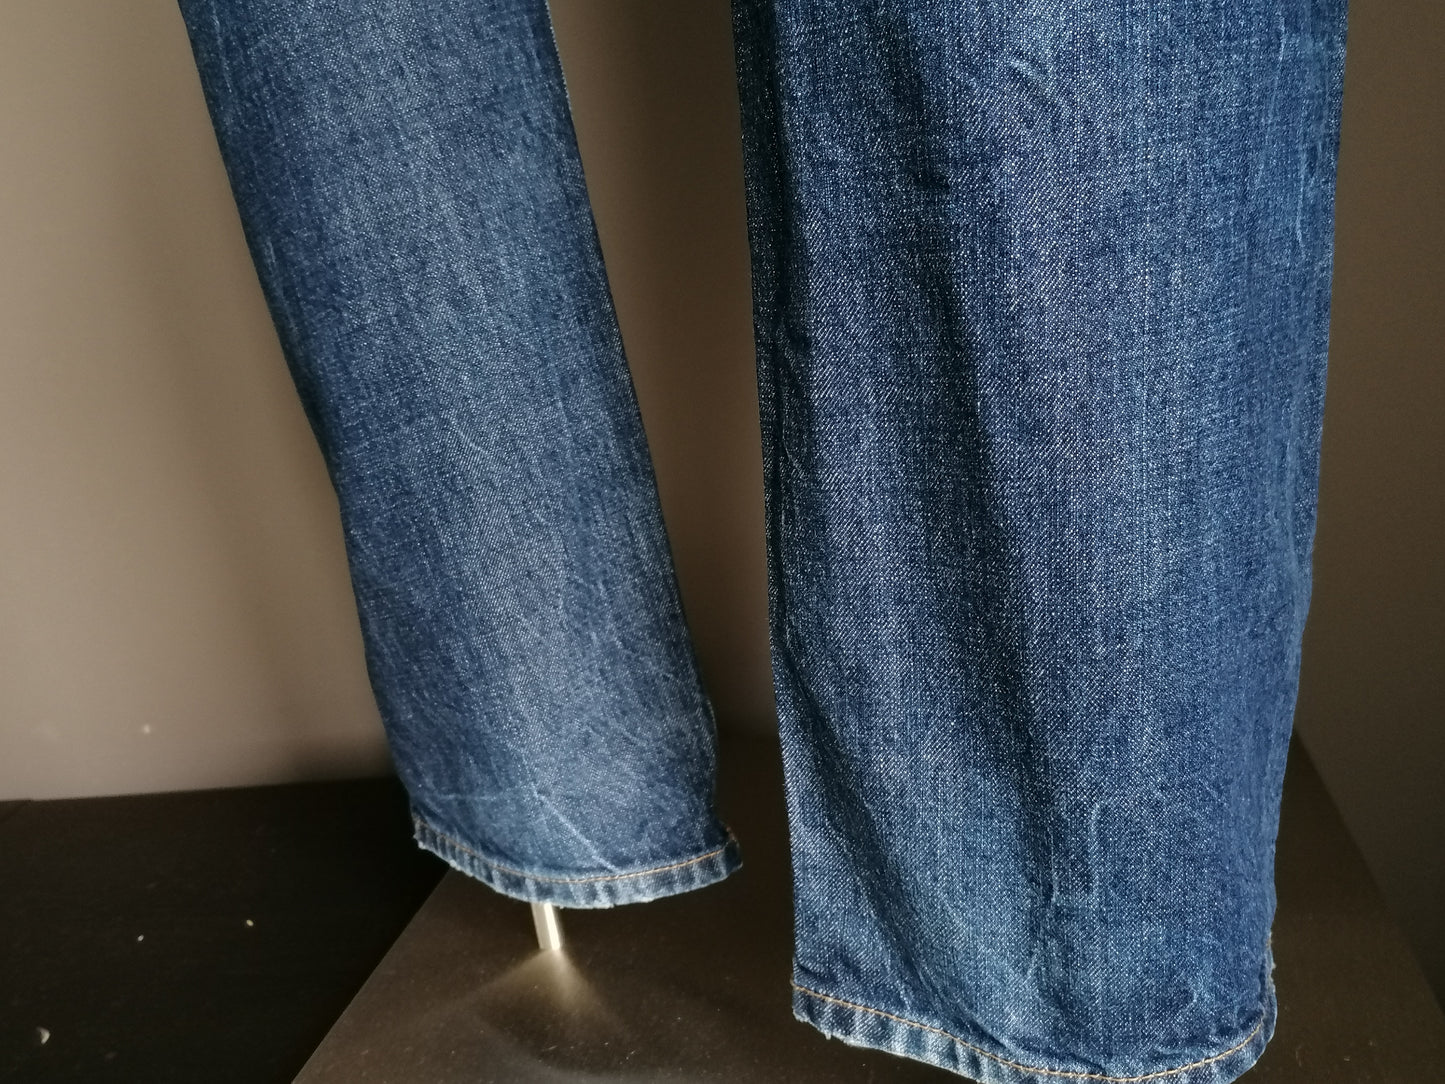 Silvercreek Jeans. Dunkelblau farbig. Größe W38 - L34. Tischlertyp.